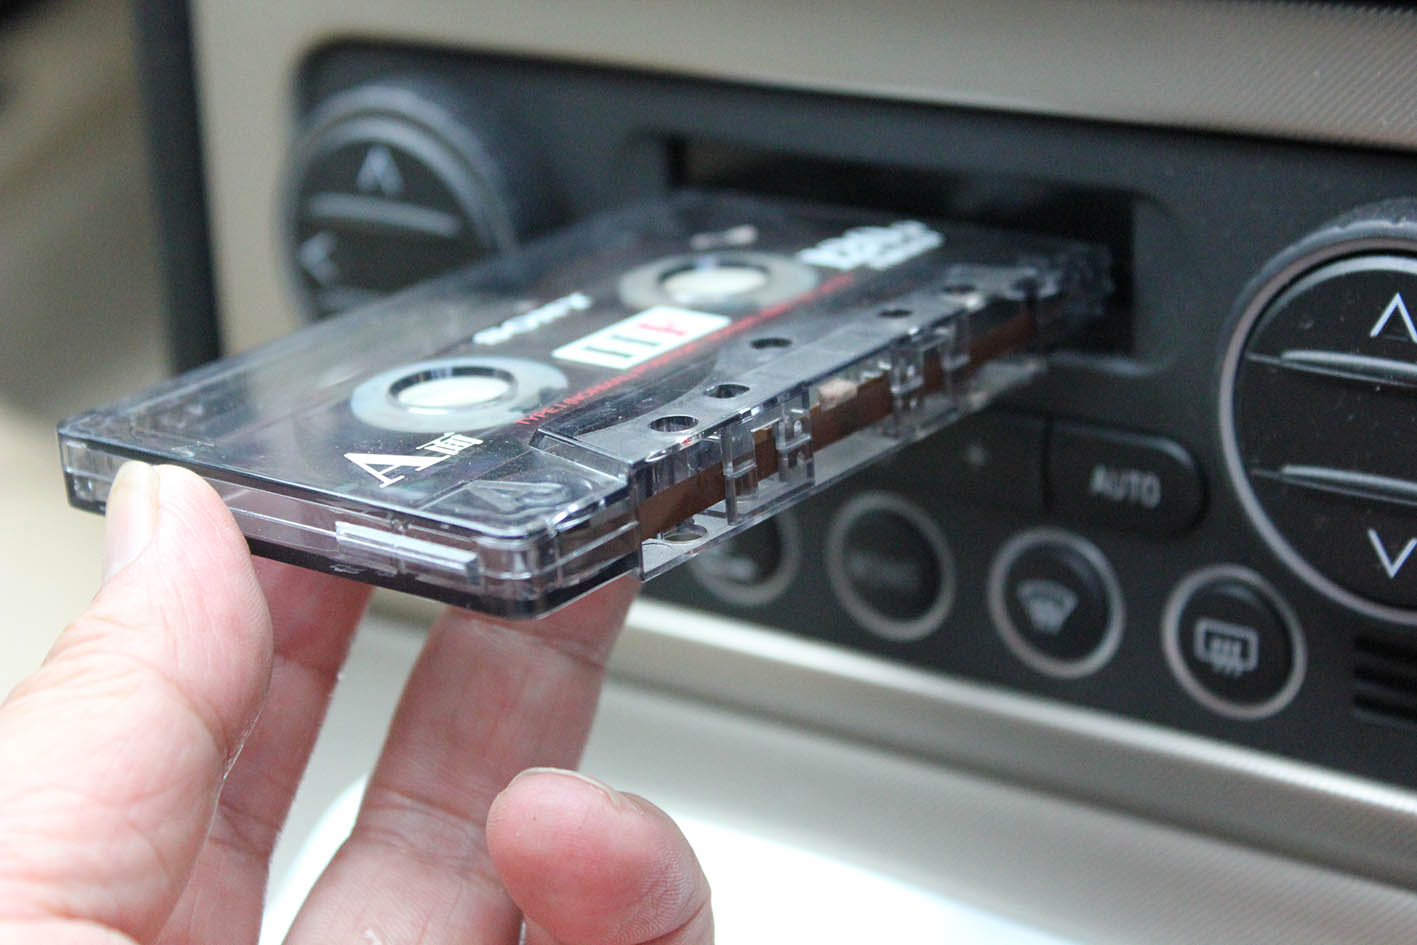 捨てるのはまだ早い カセットテープ Mdをクルマで聴いてタイムトリップしよう 自動車情報誌 ベストカー